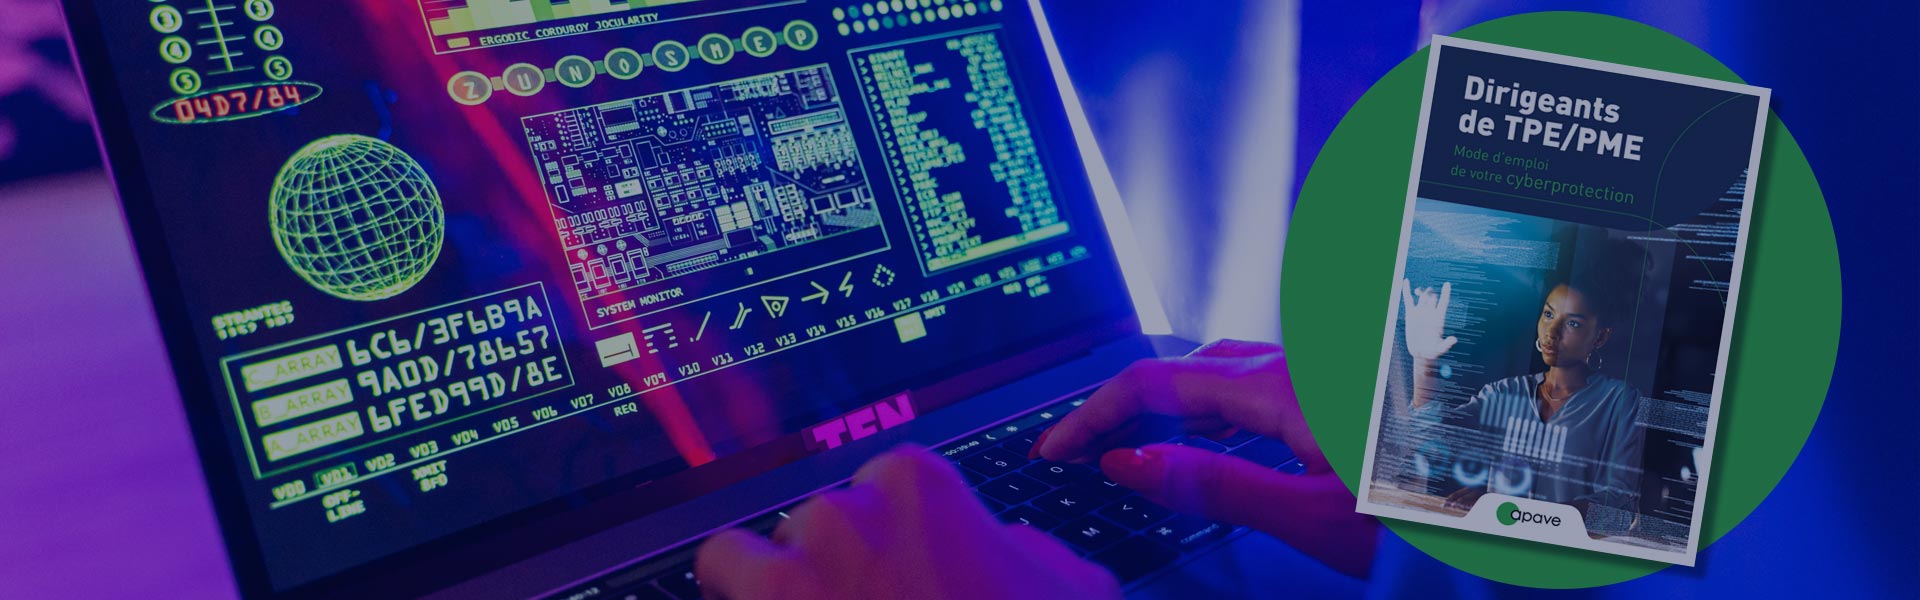 Hacker devant son ordinateur et couverture du livre blanc sur l'Offre Cyber Apave